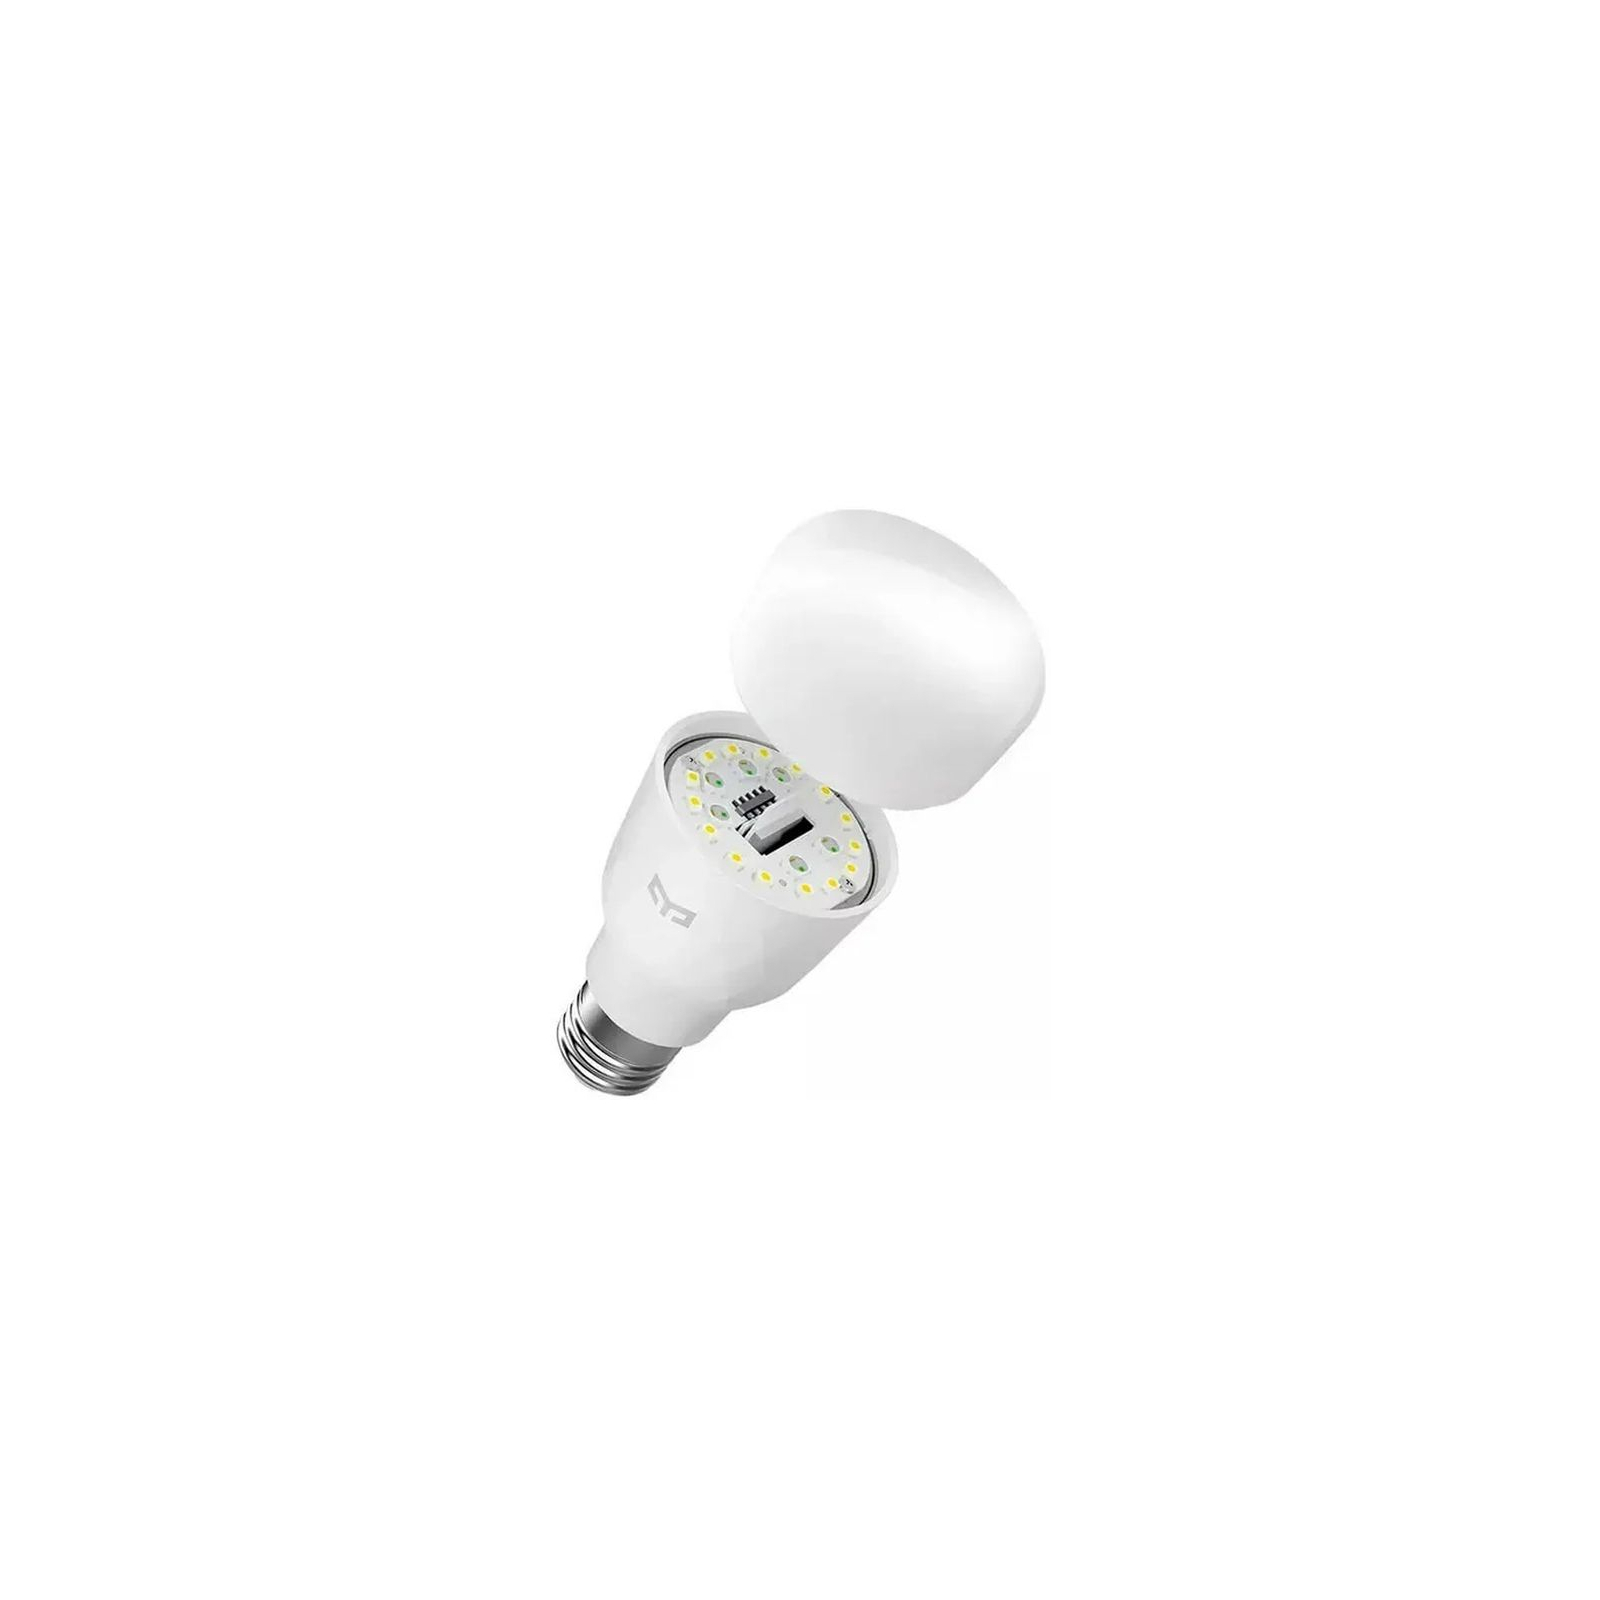 Умная лампочка Yeelight Smart LED Bulb W3(White) (YLDP007) изображение 4